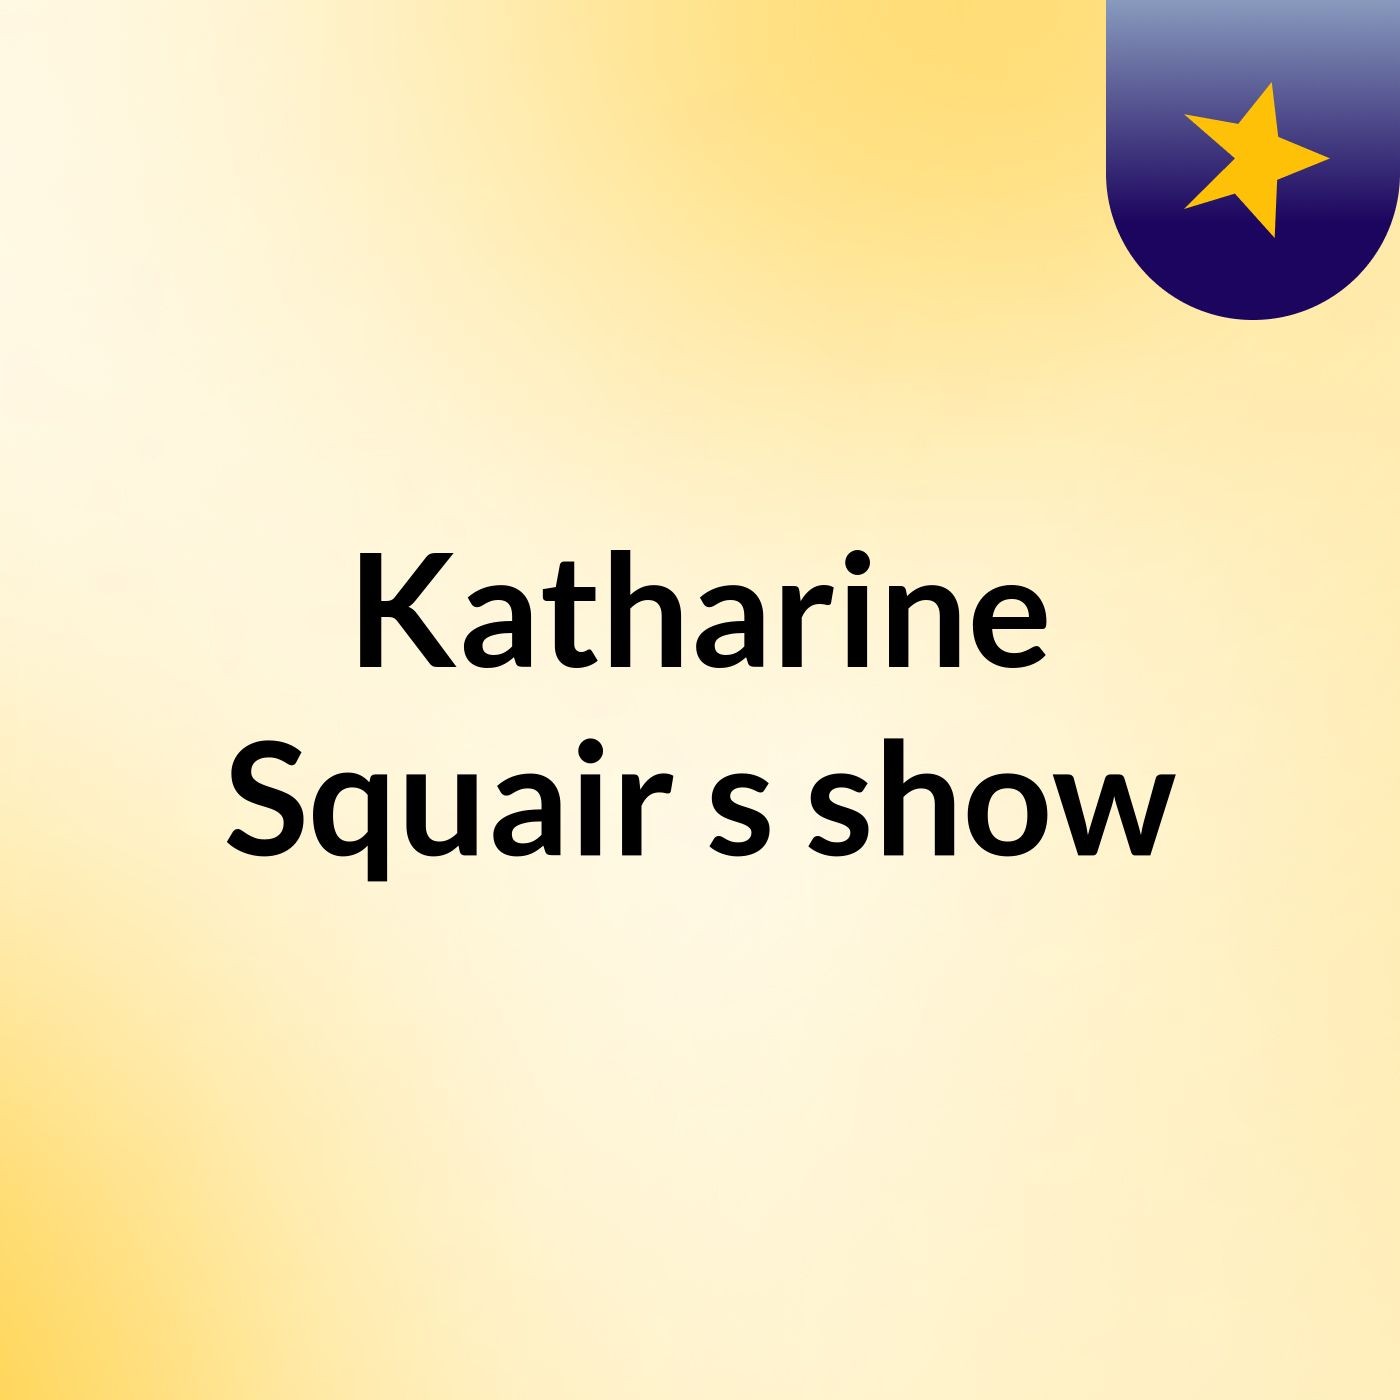 Katharine Squair's show